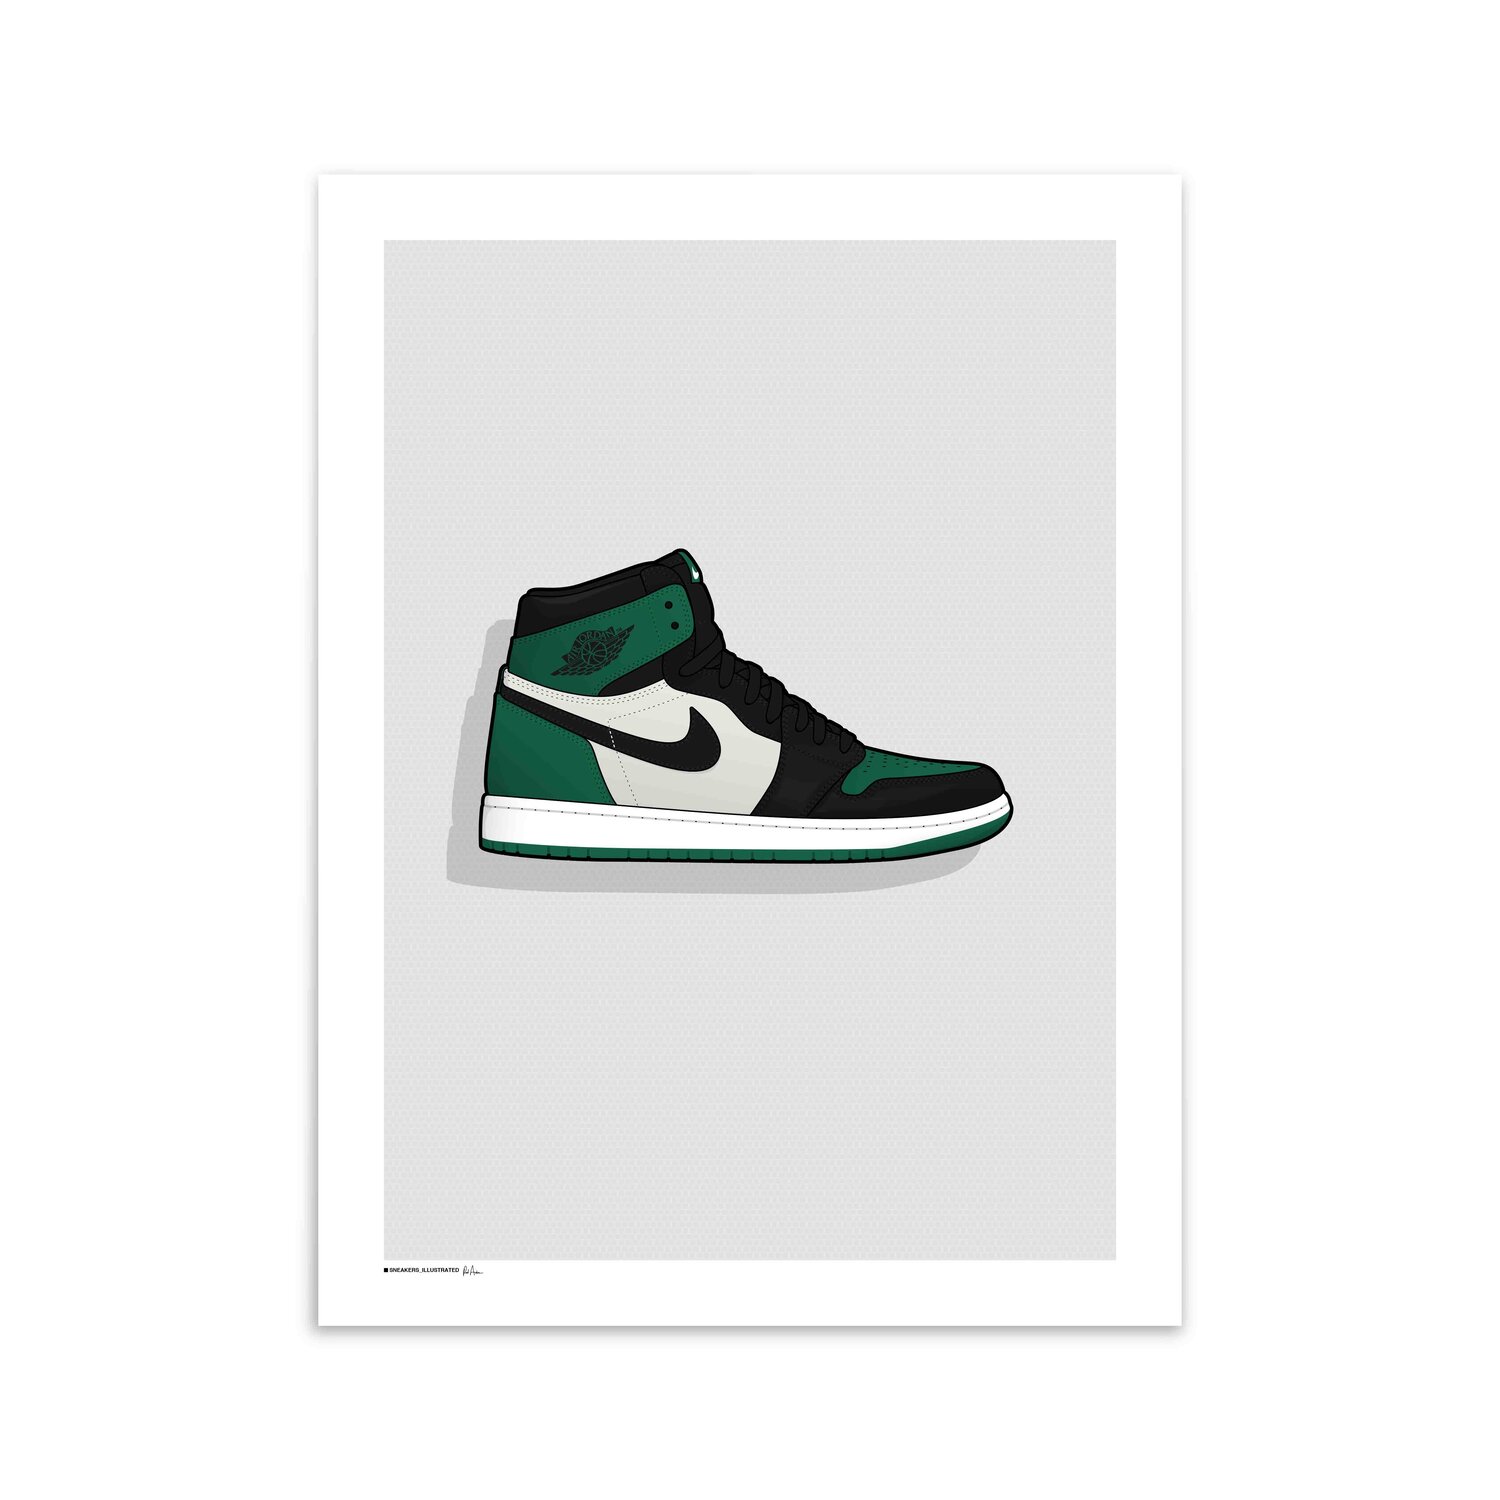 Jordan 'Pine Green' Poster — Sneakers Illustrated